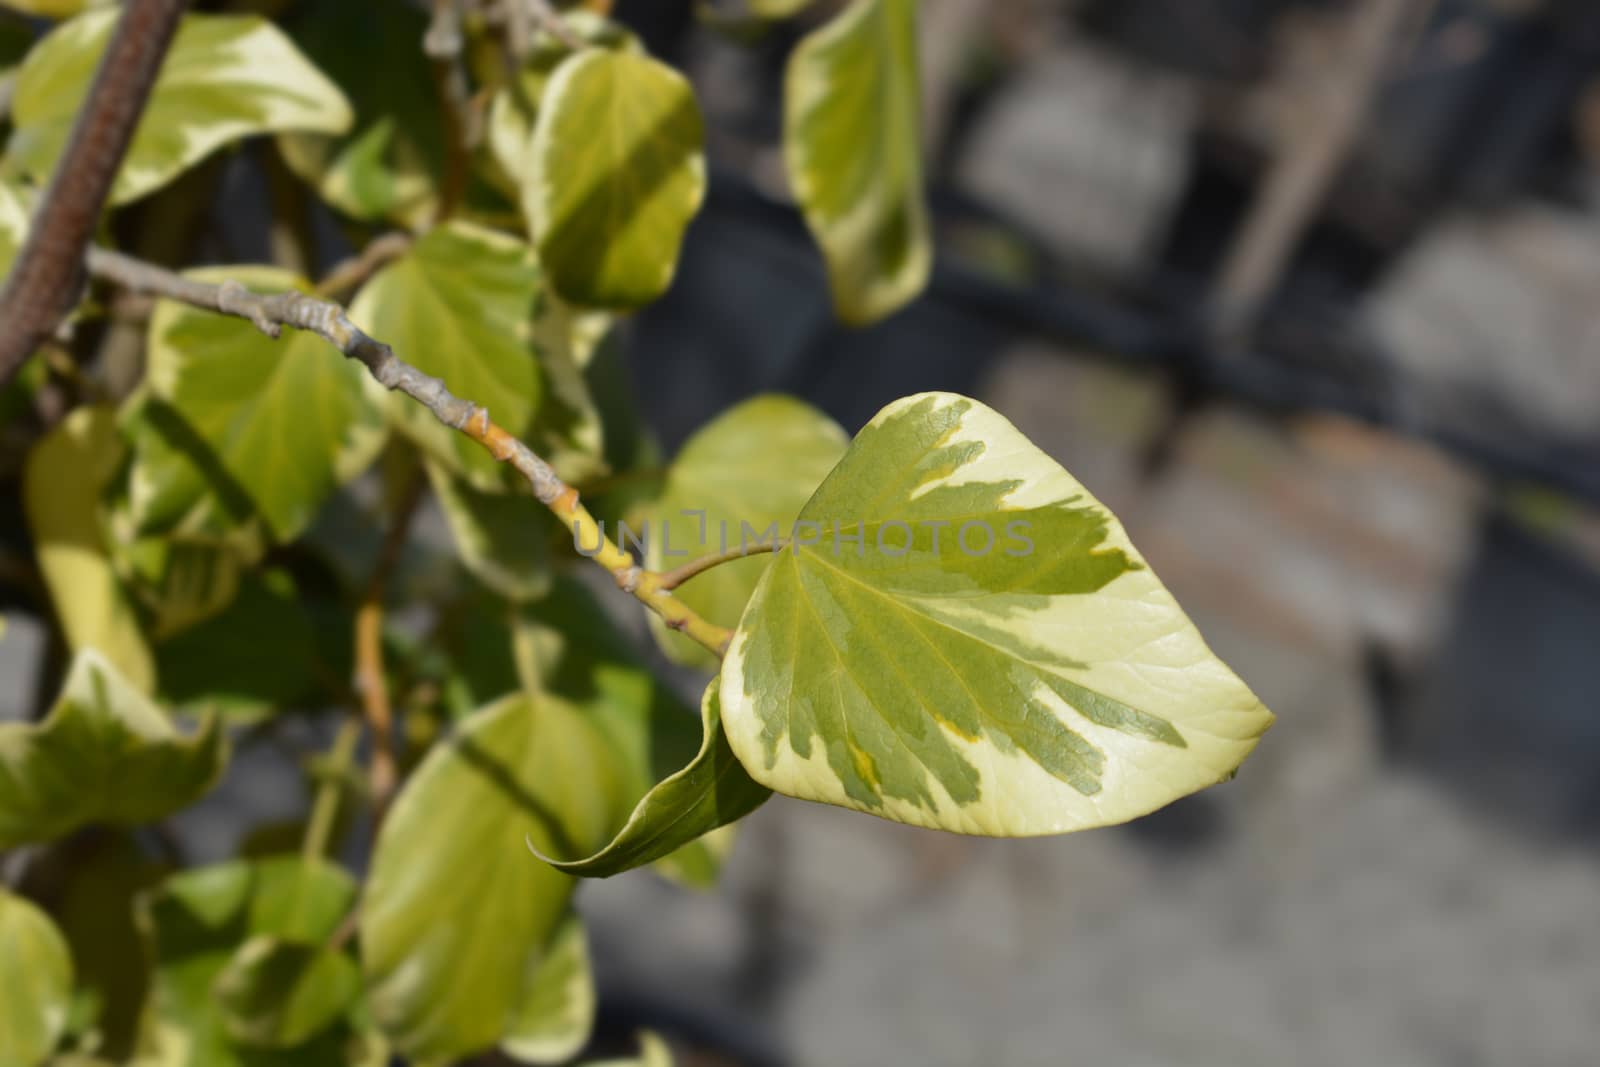 Ivy Dentata variegata by nahhan